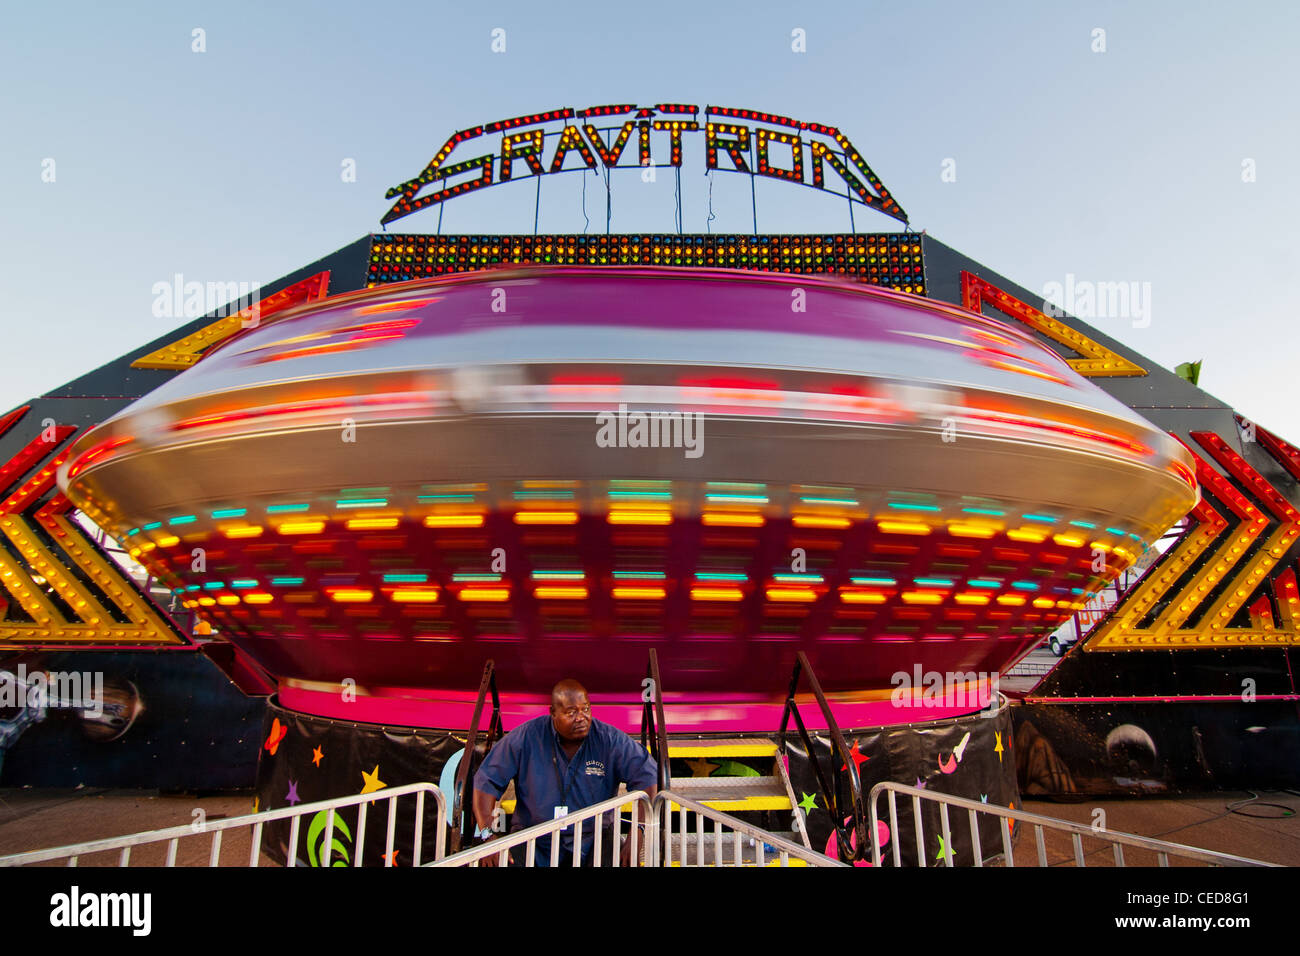 L 'Gravitron' ride au Nebraska State Fair. Les gens grimper à l'intérieur et de la balade tourne à haute vitesse. Banque D'Images